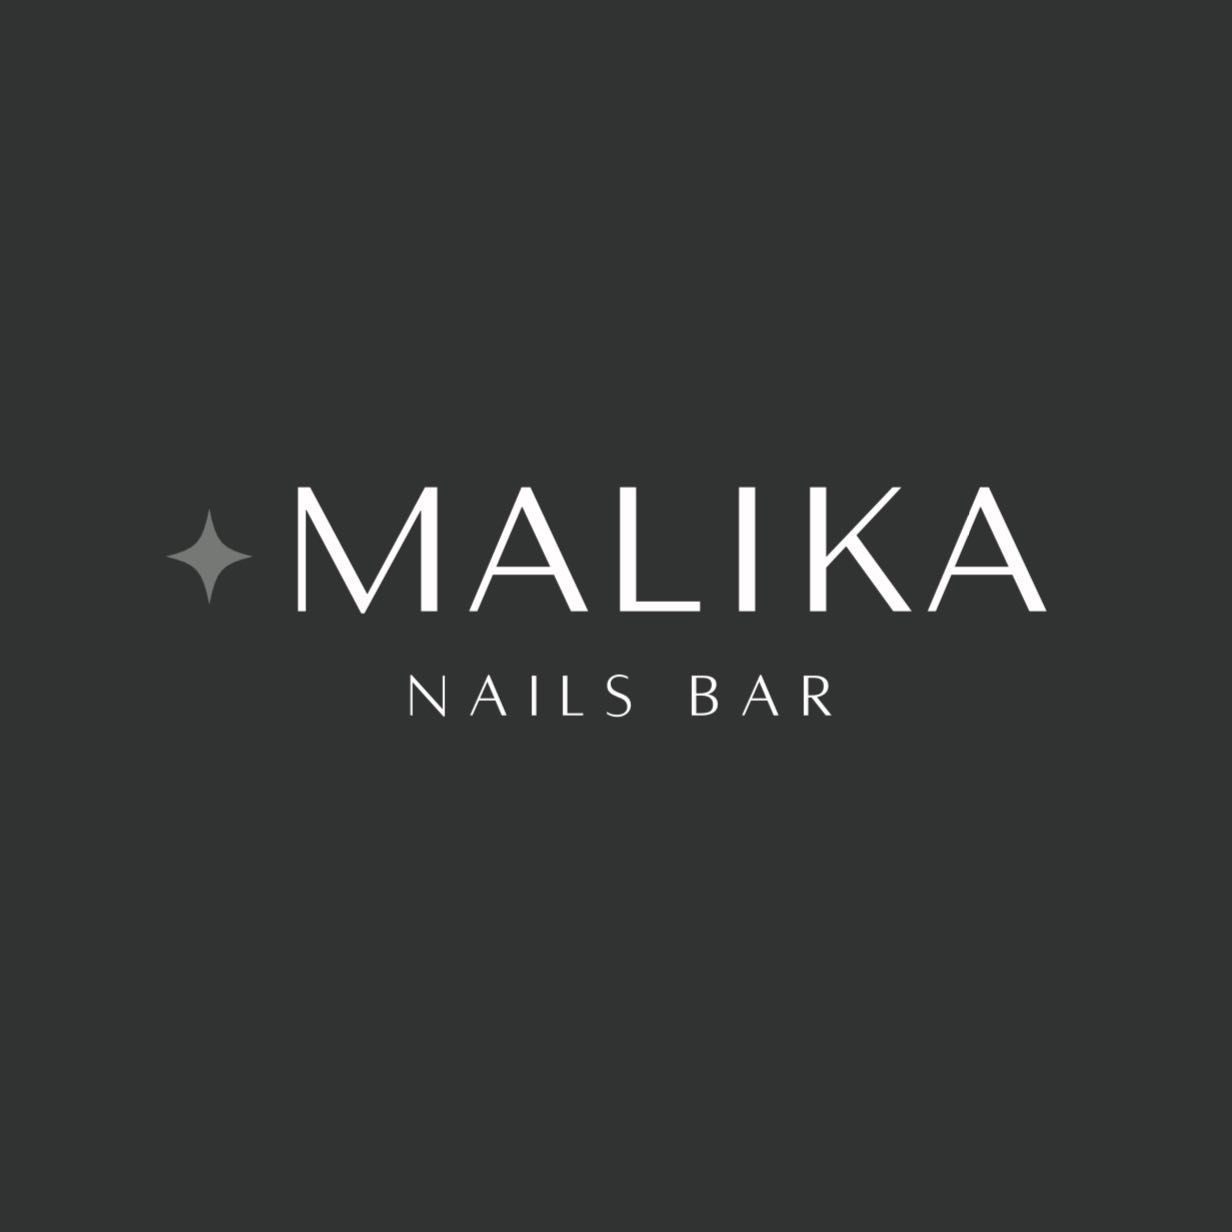 Malika Nails Bar, Hoża 55/4, 00-681, Warszawa, Śródmieście